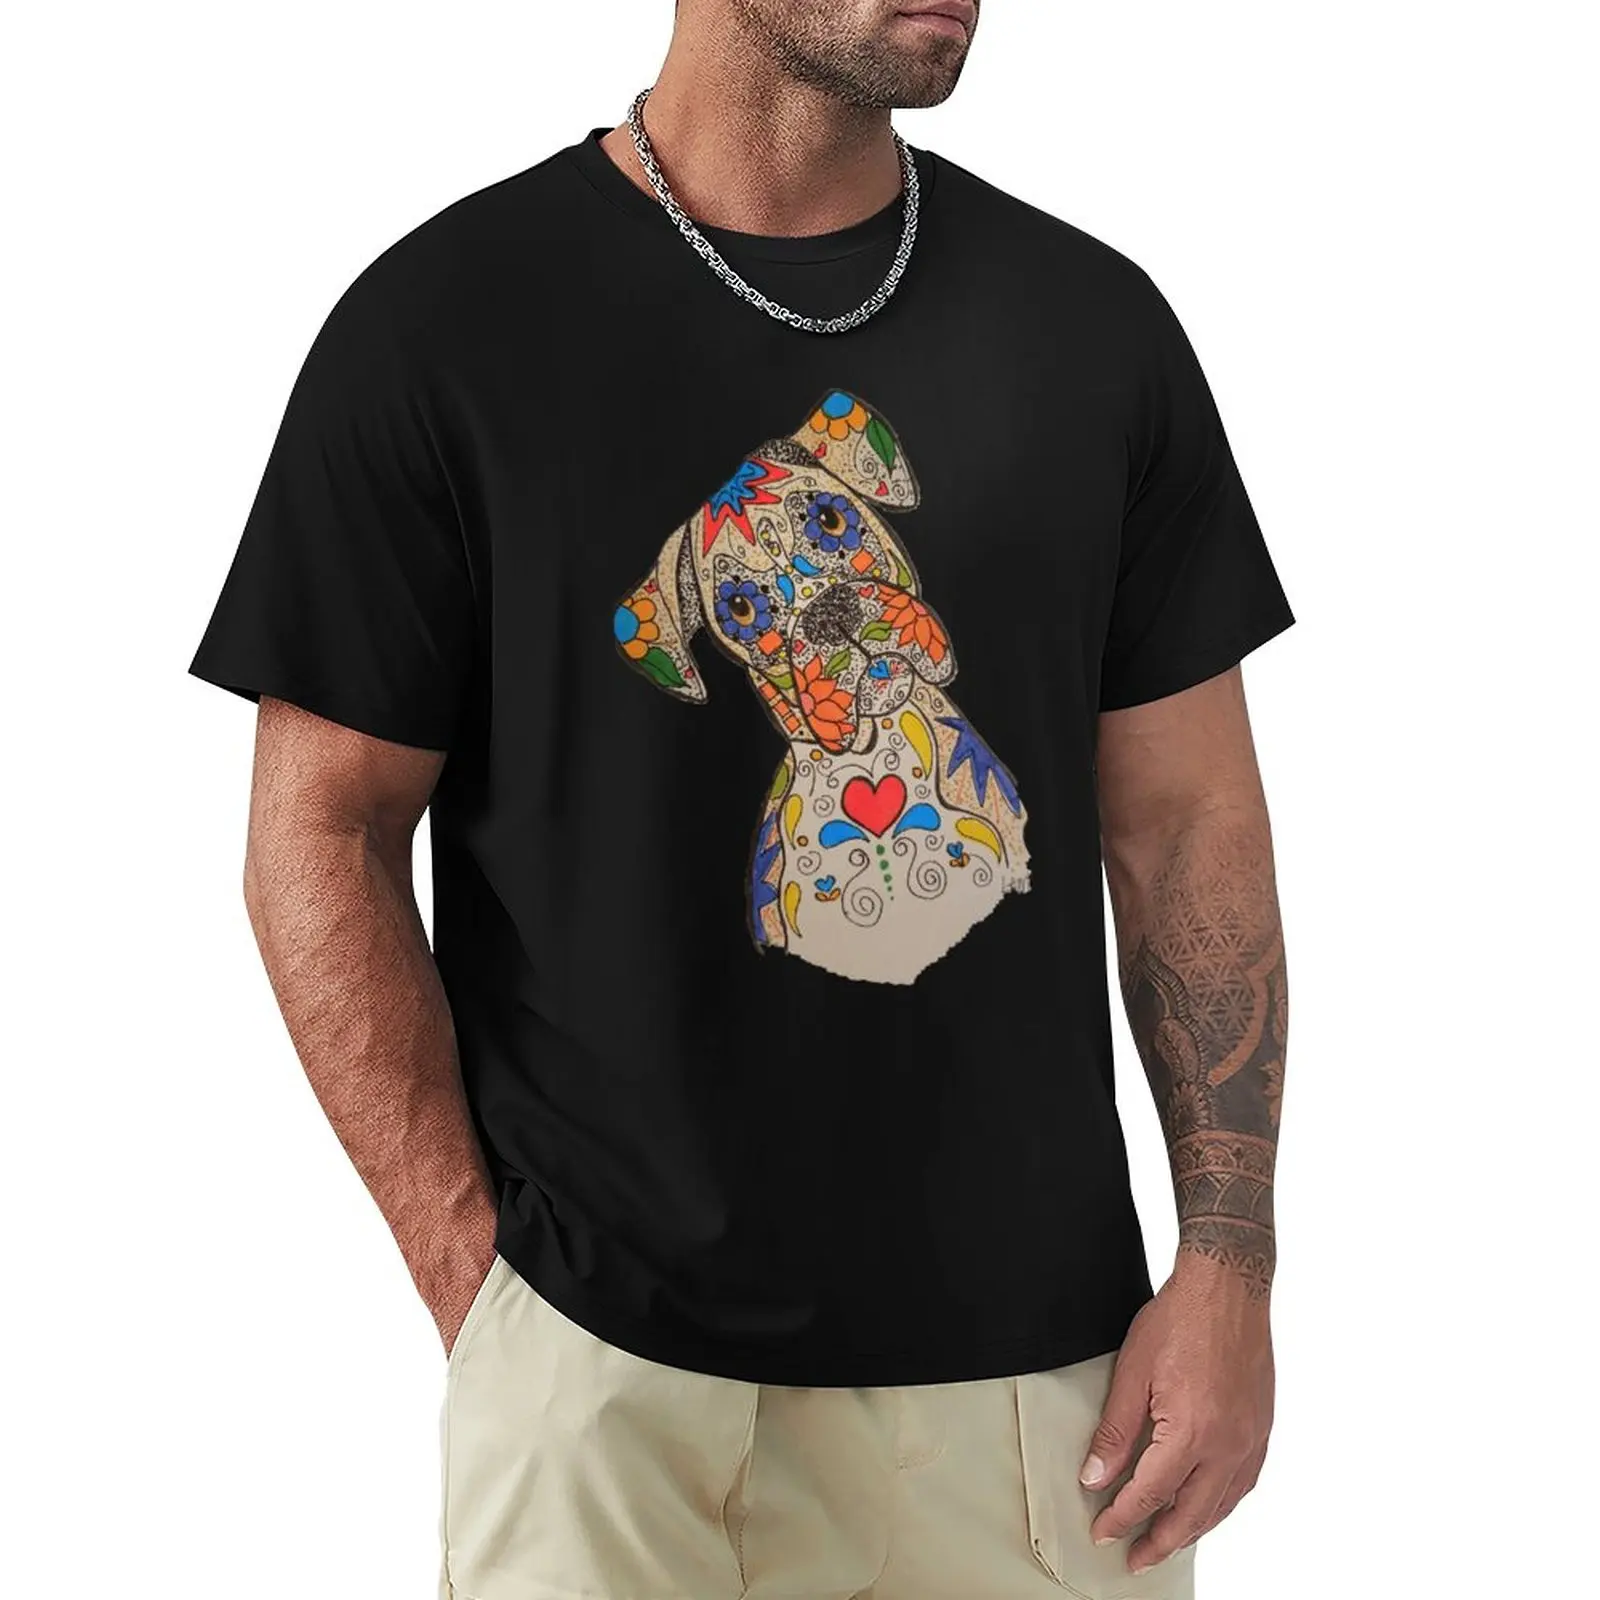 Футболка-боксер с сахарным черепом, изготовленная на заказ, обычная футболка, футболки, мужская одежда